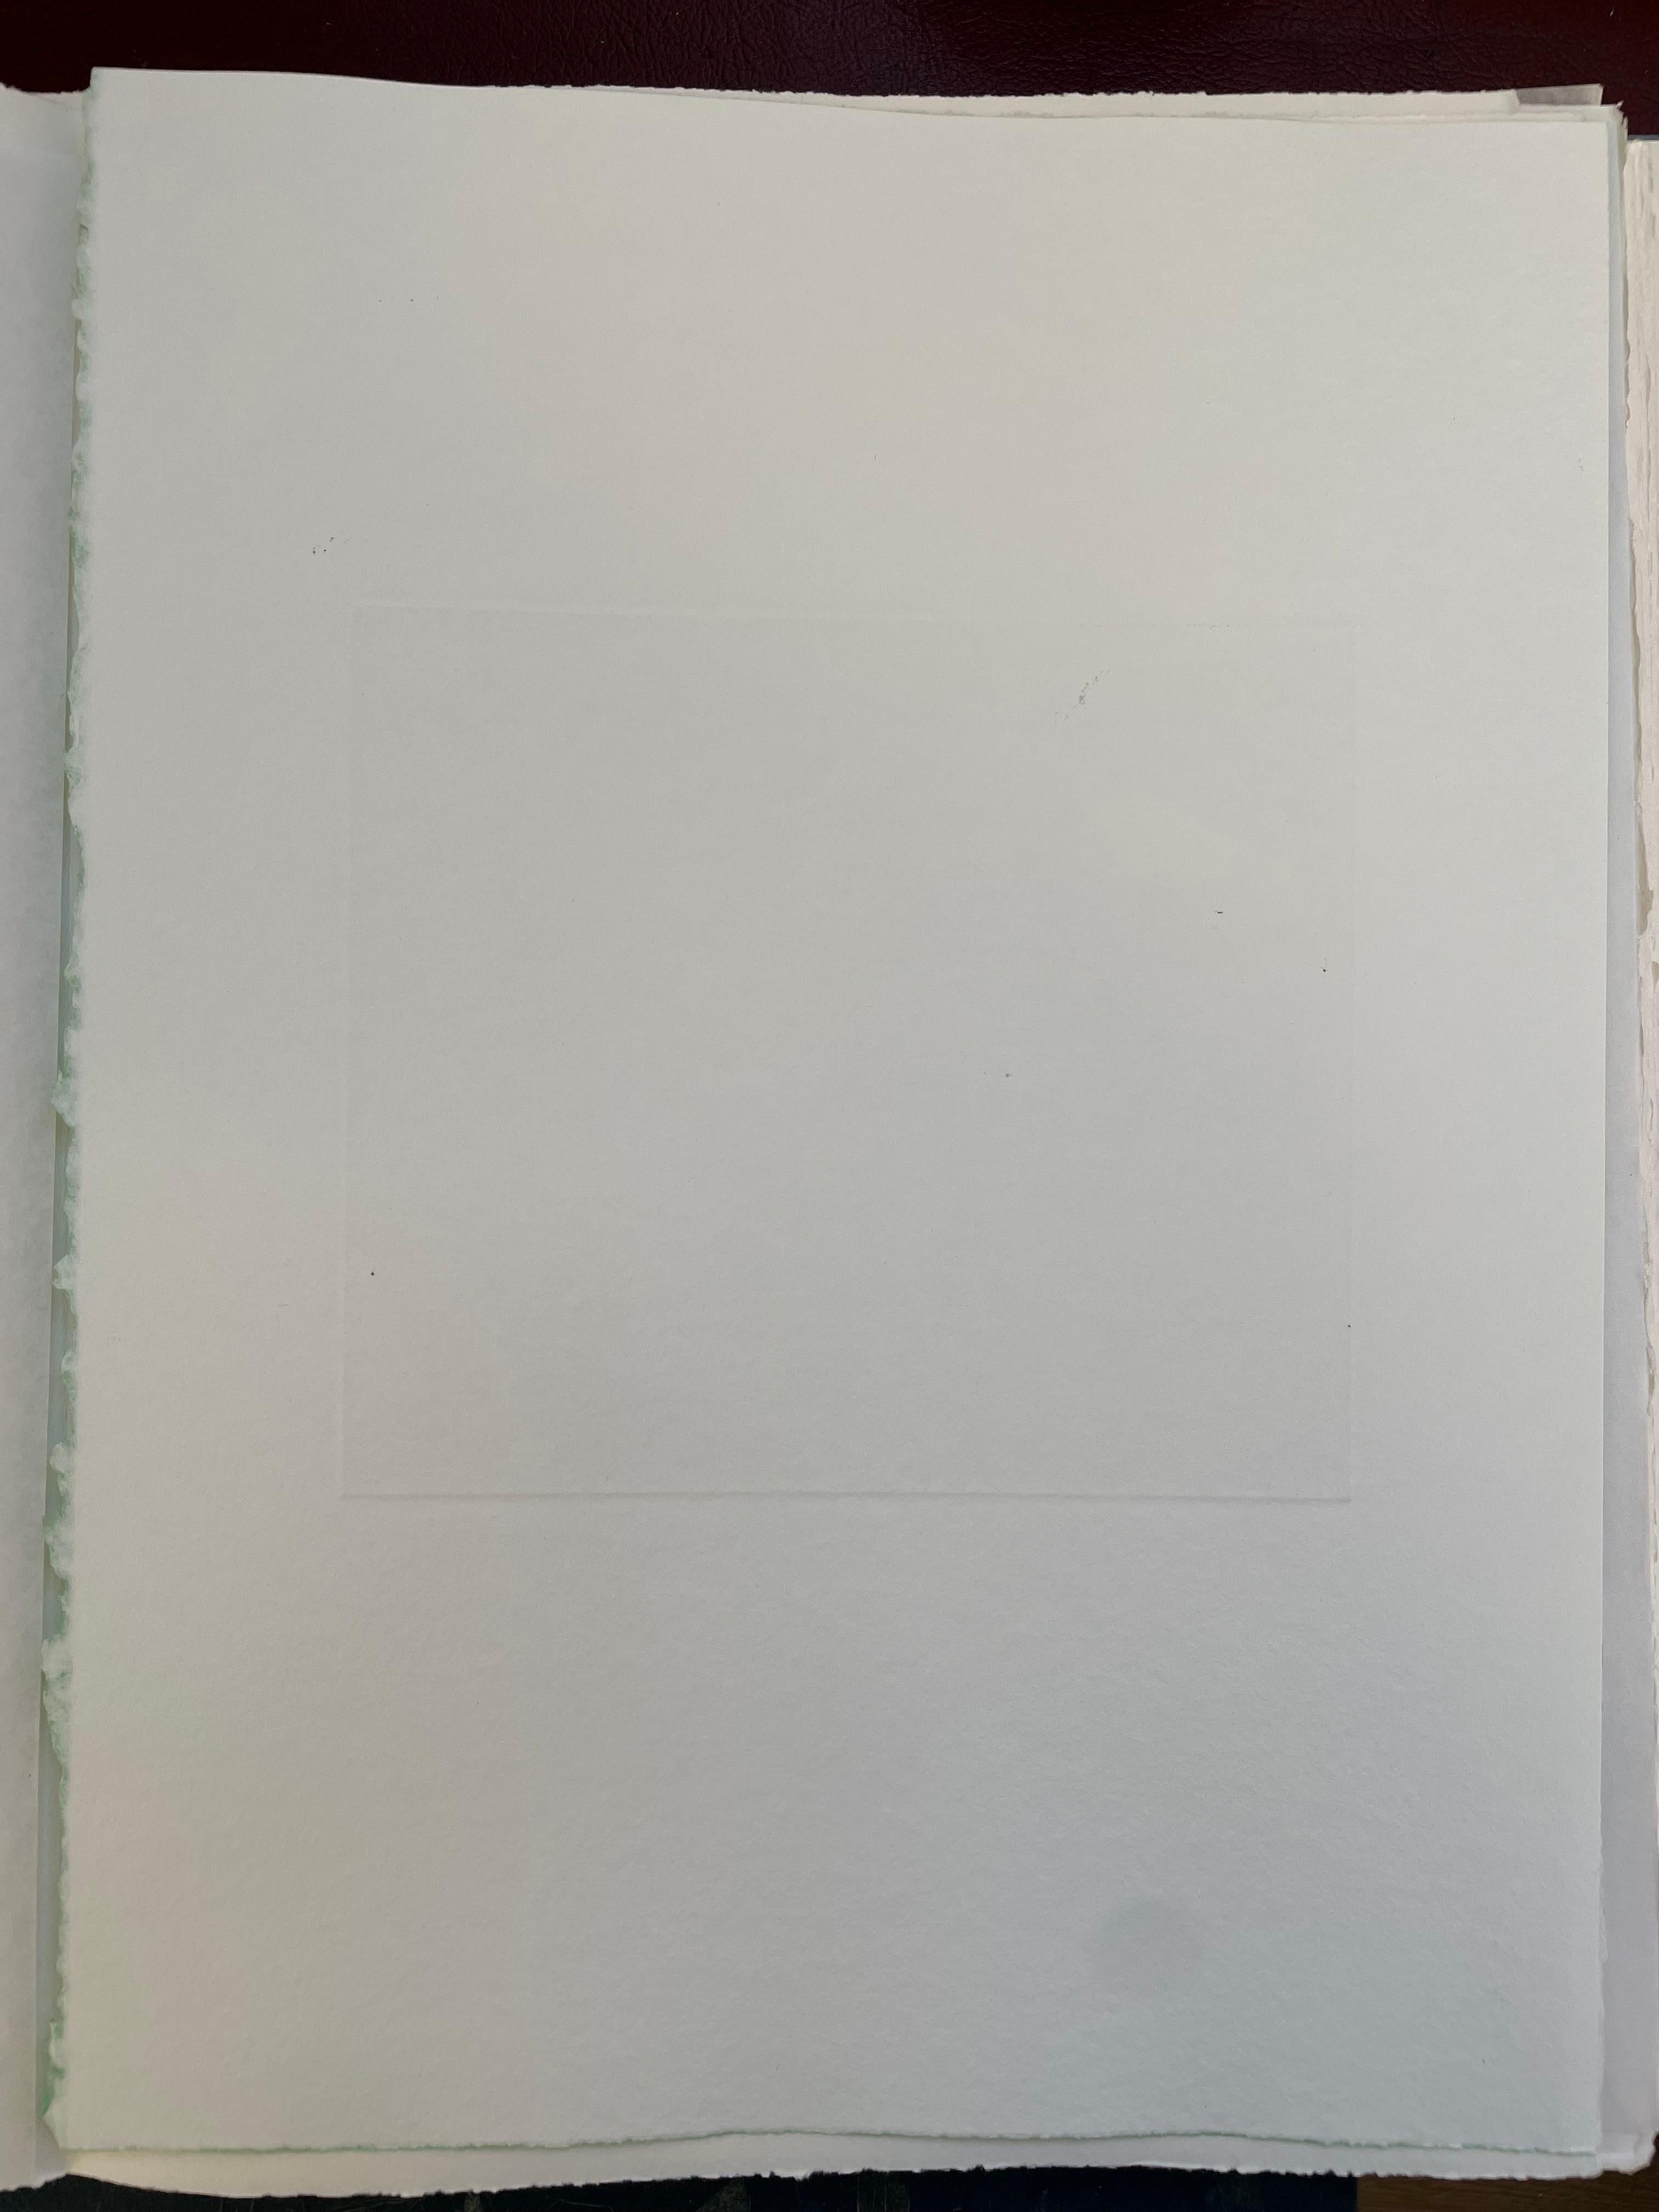 François-Xavier Lalanne (1927-2008) Un bélier et un oiseau, 2005 
Techniques : aquatinte aquarellée et vernis mou sur papier, signée au crayon par François Xavier Lalanne, en parfait état. 
Dimensions du papier : 38 x 28 cm (14,96 x 11 inches)